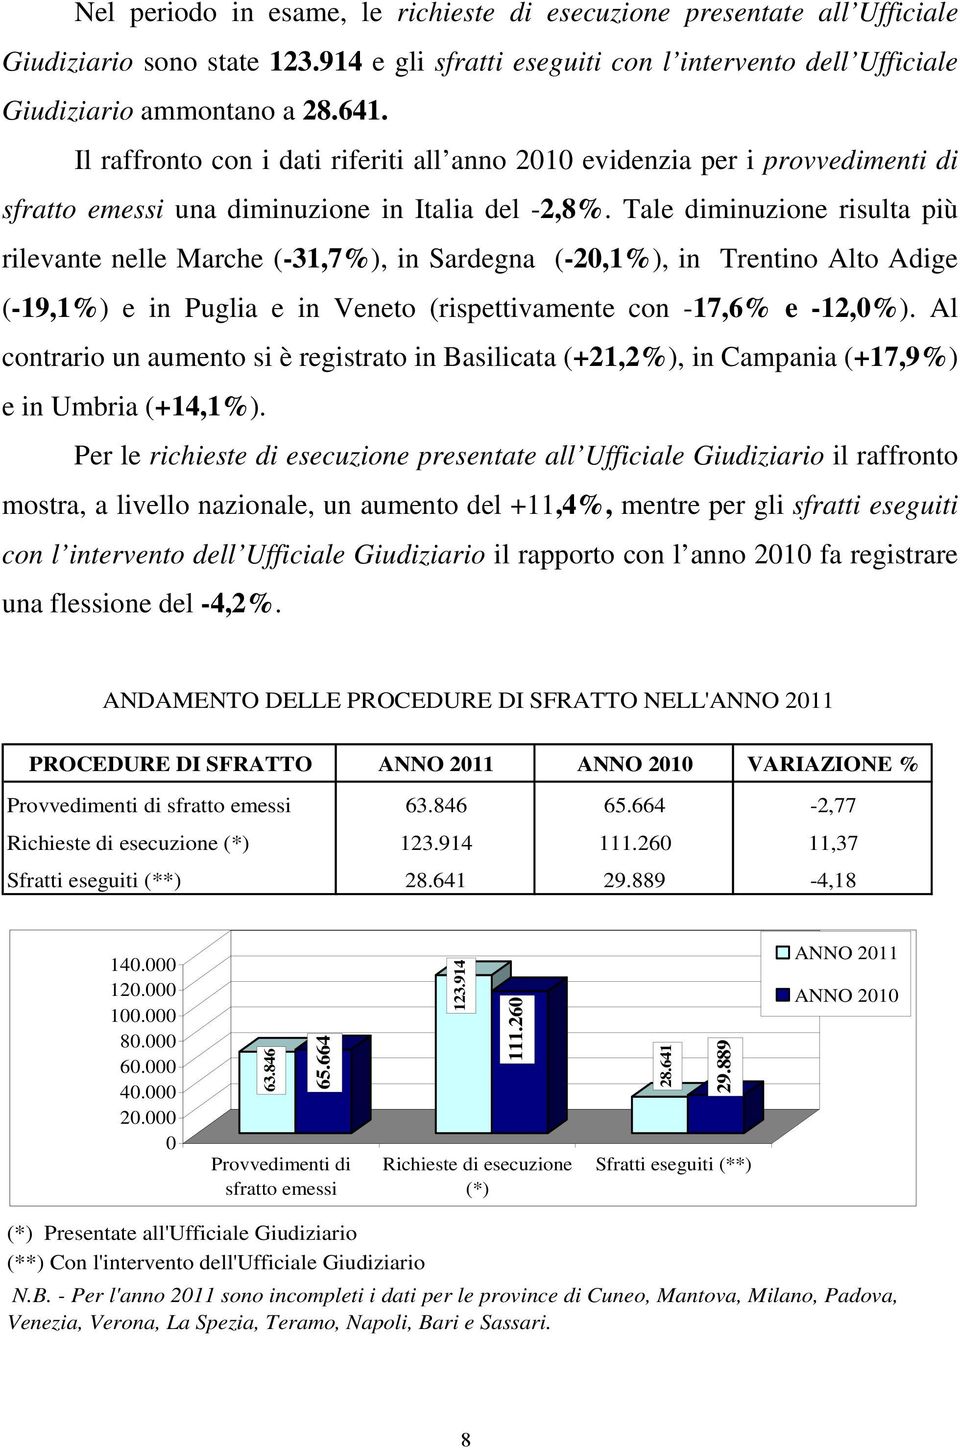 Tale diminuzione risulta più rilevante nelle Marche (-31,7%), in Sardegna (-20,1%), in Trentino Alto Adige (-19,1%) e in Puglia e in Veneto (rispettivamente con -17,6% e -12,0%).